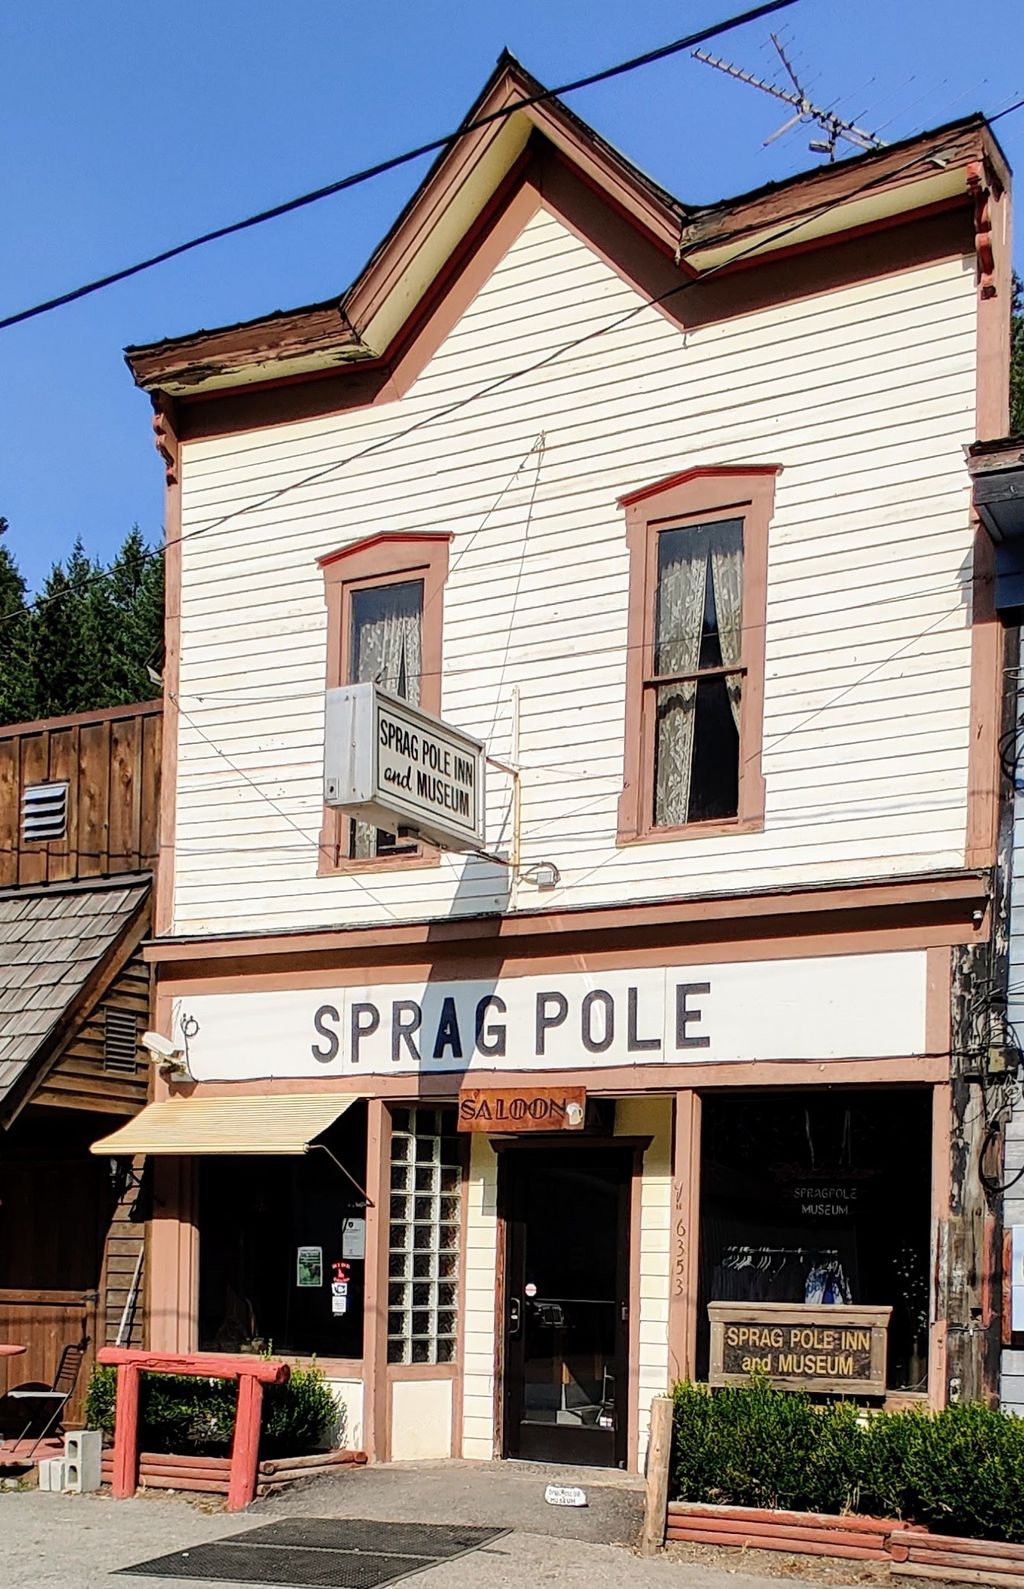 Sprag Pole Inn and Museum